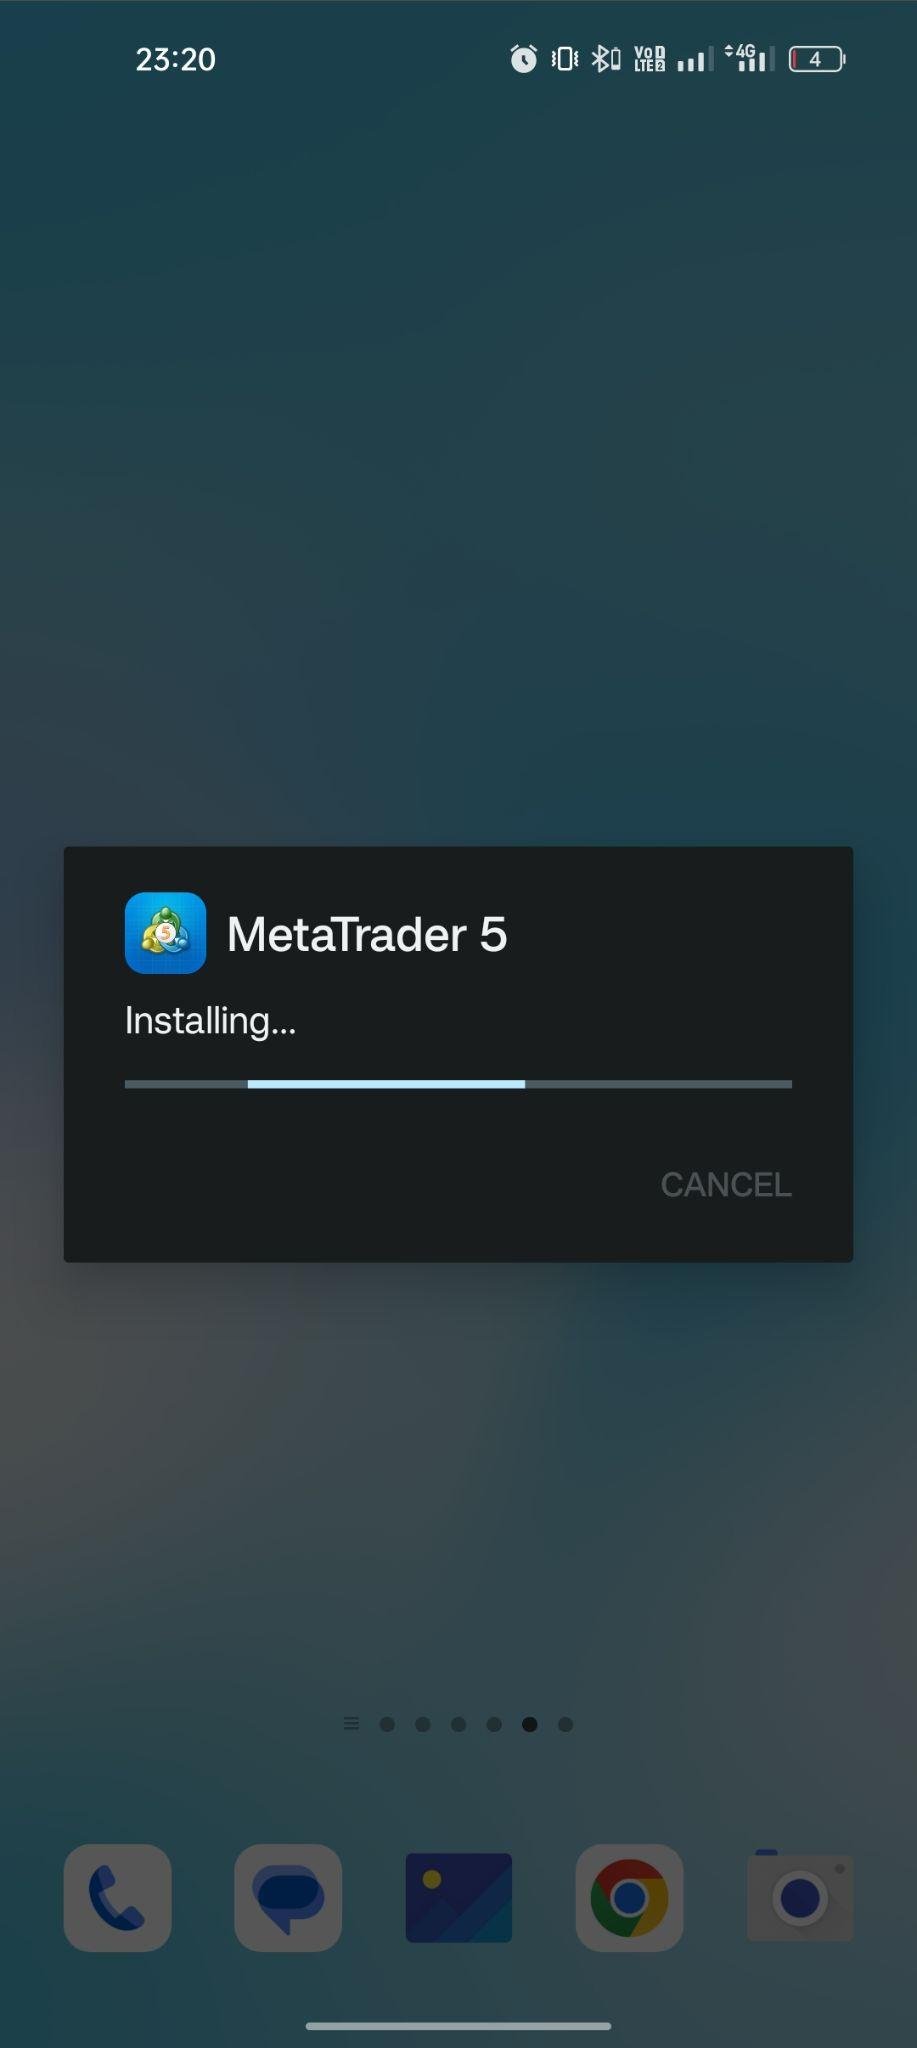 MetaTrader 5 apk installing